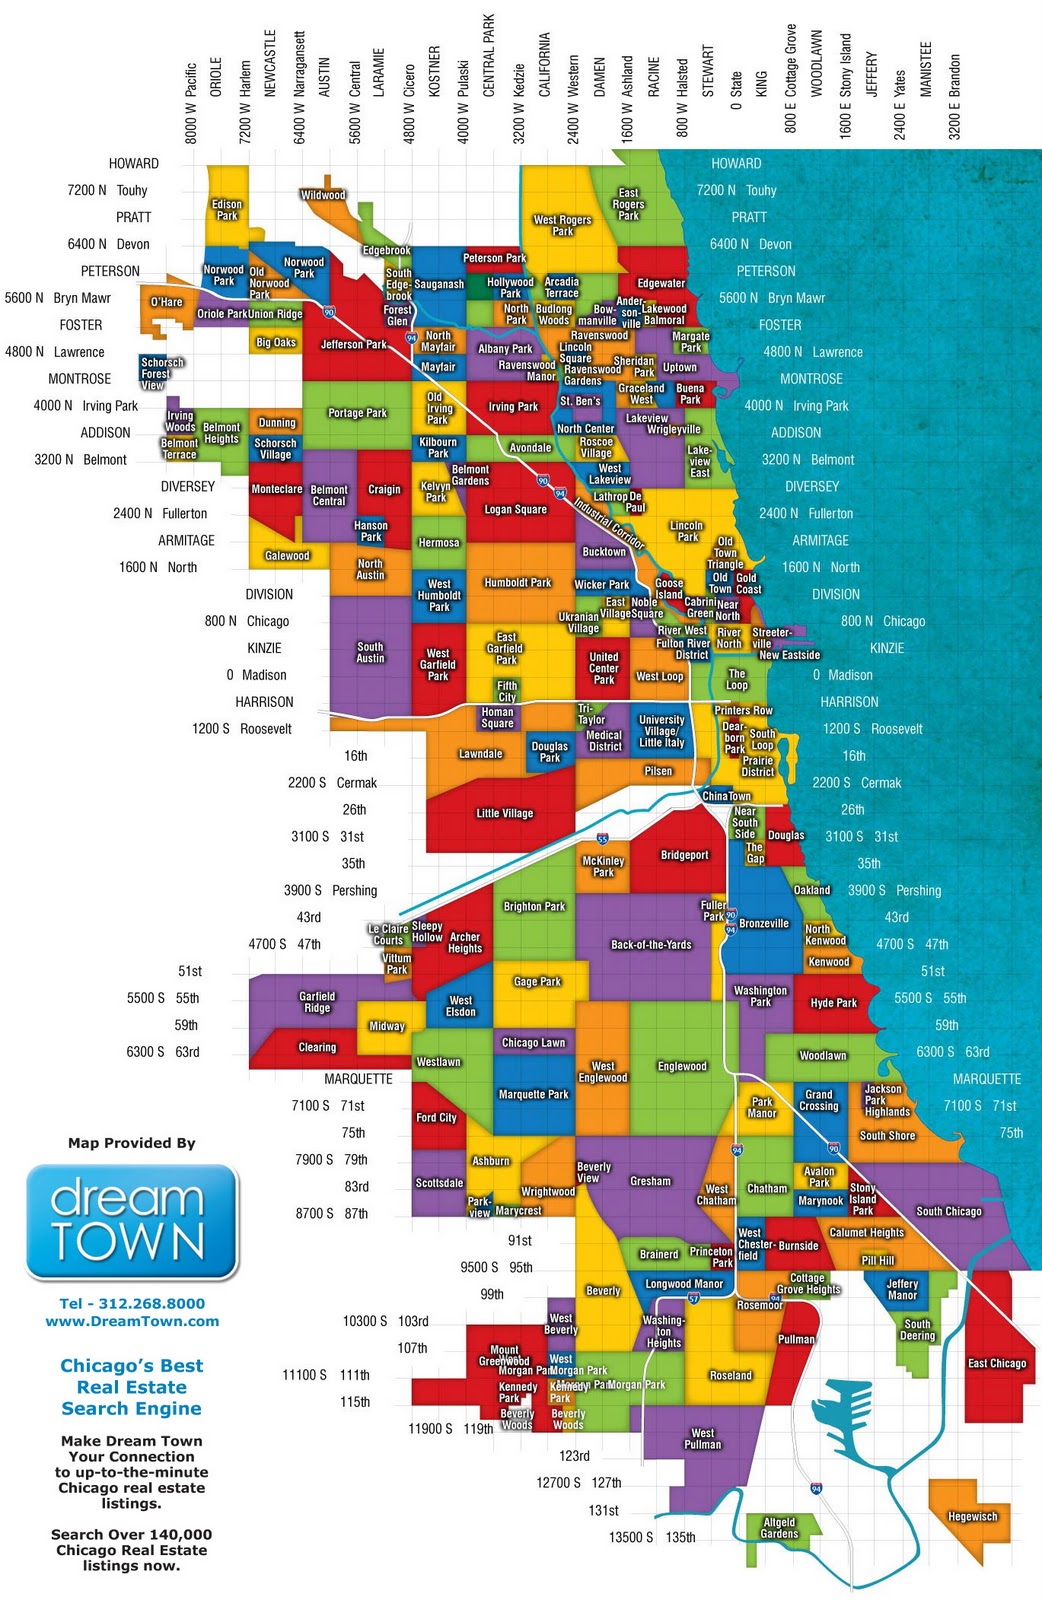 Development of Neighborhoods in Chicago